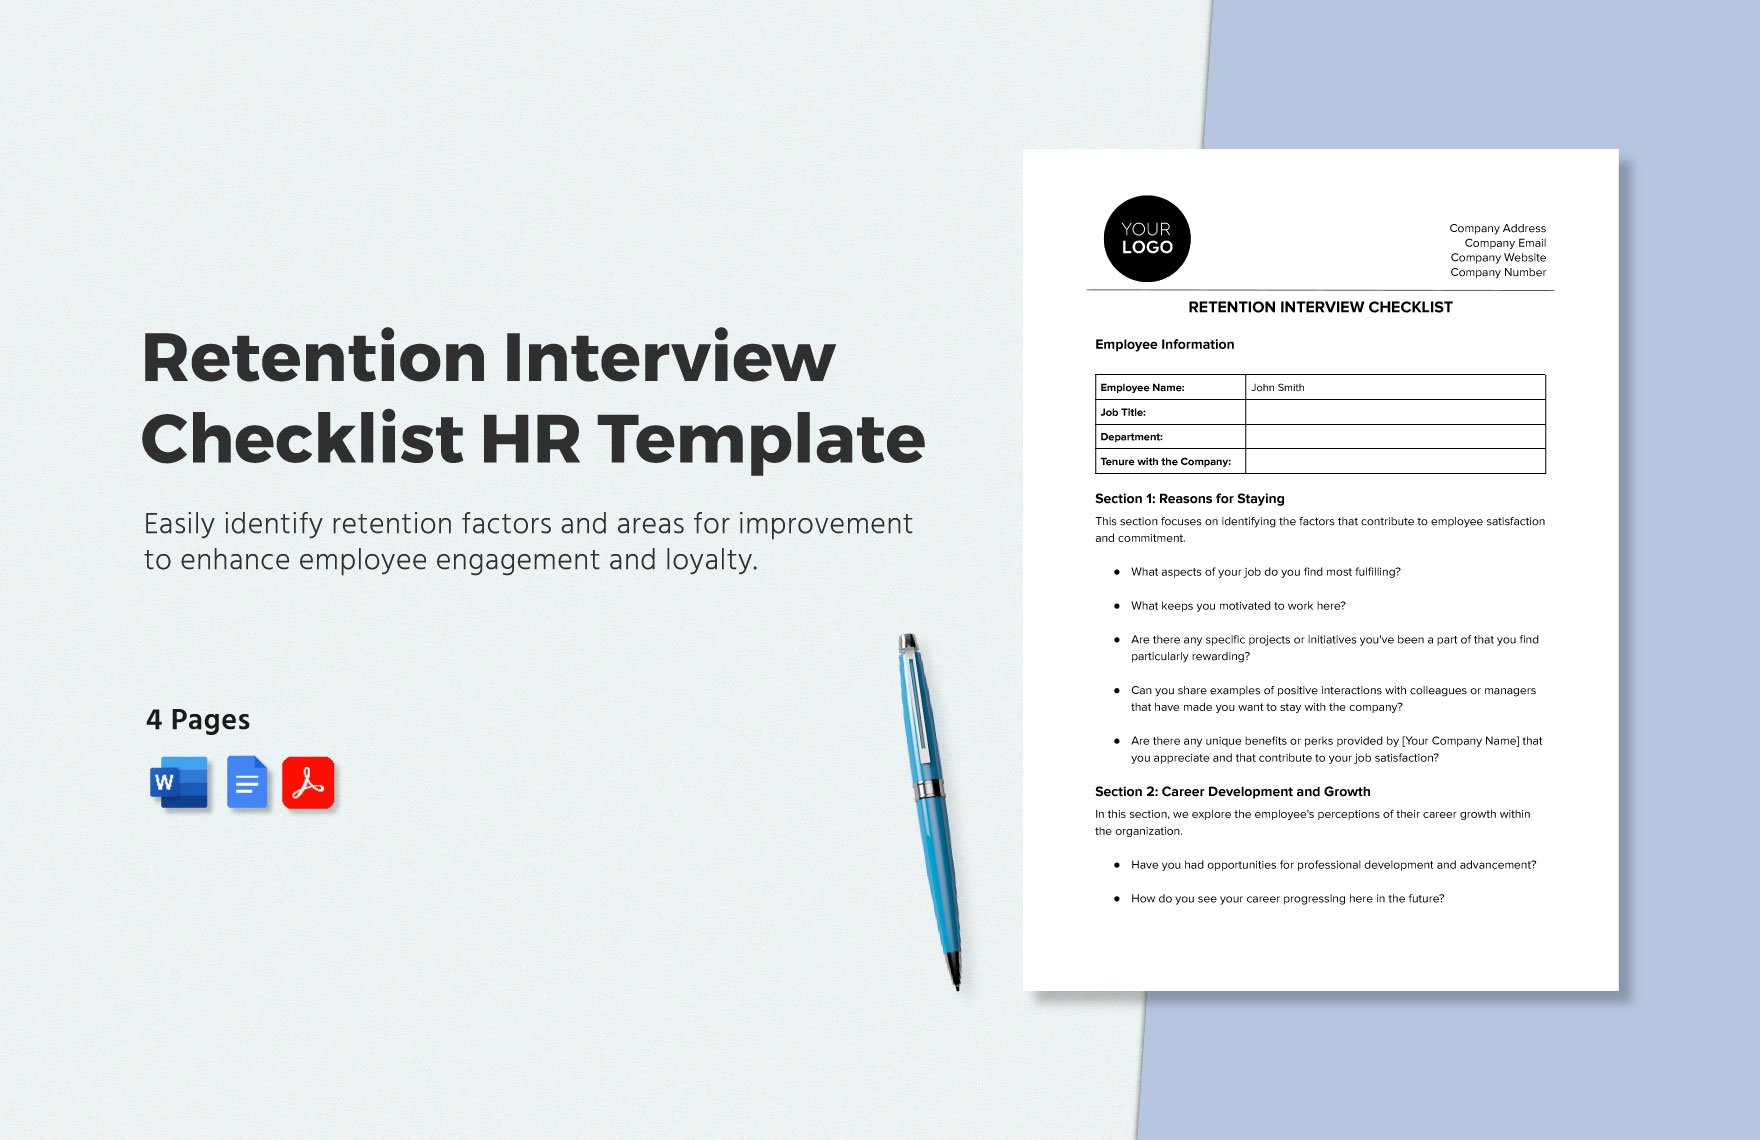 Retention Interview Checklist HR Template in Word, Google Docs, PDF